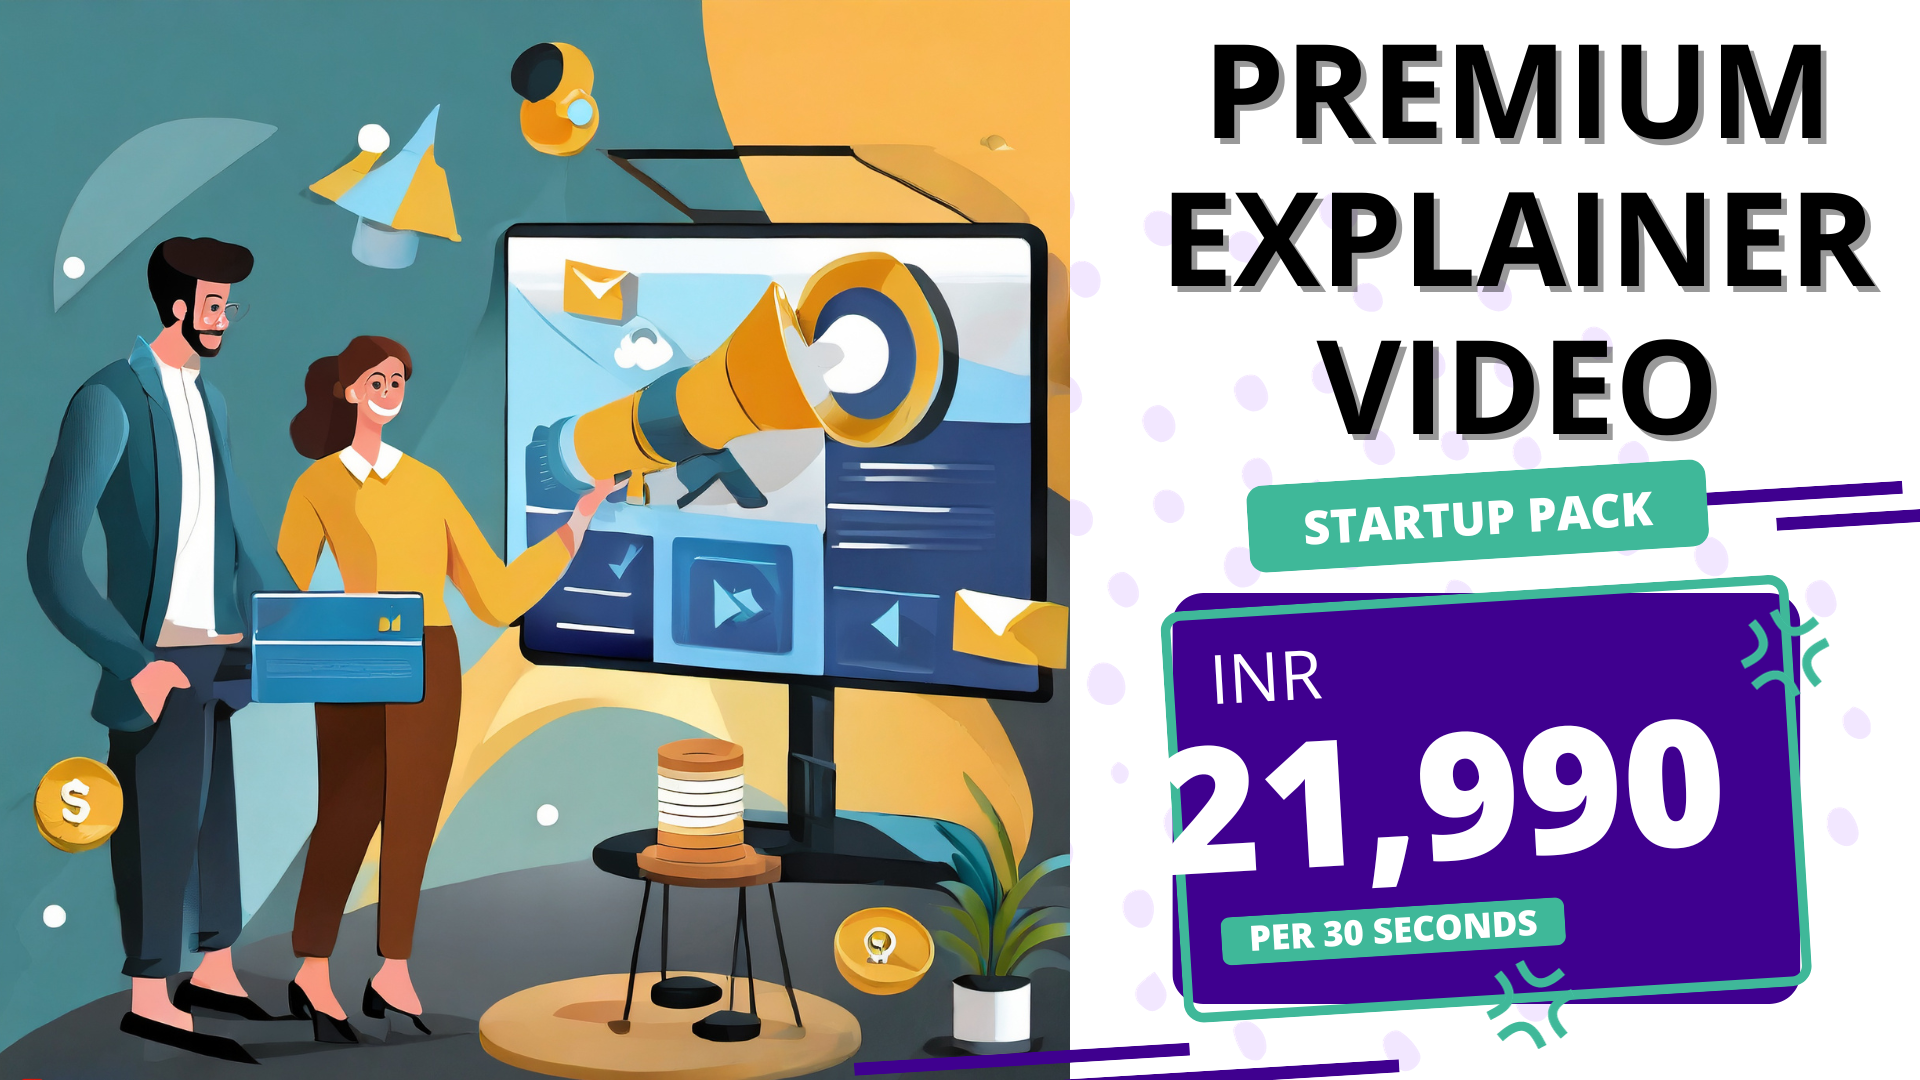 Premium Explainer Video